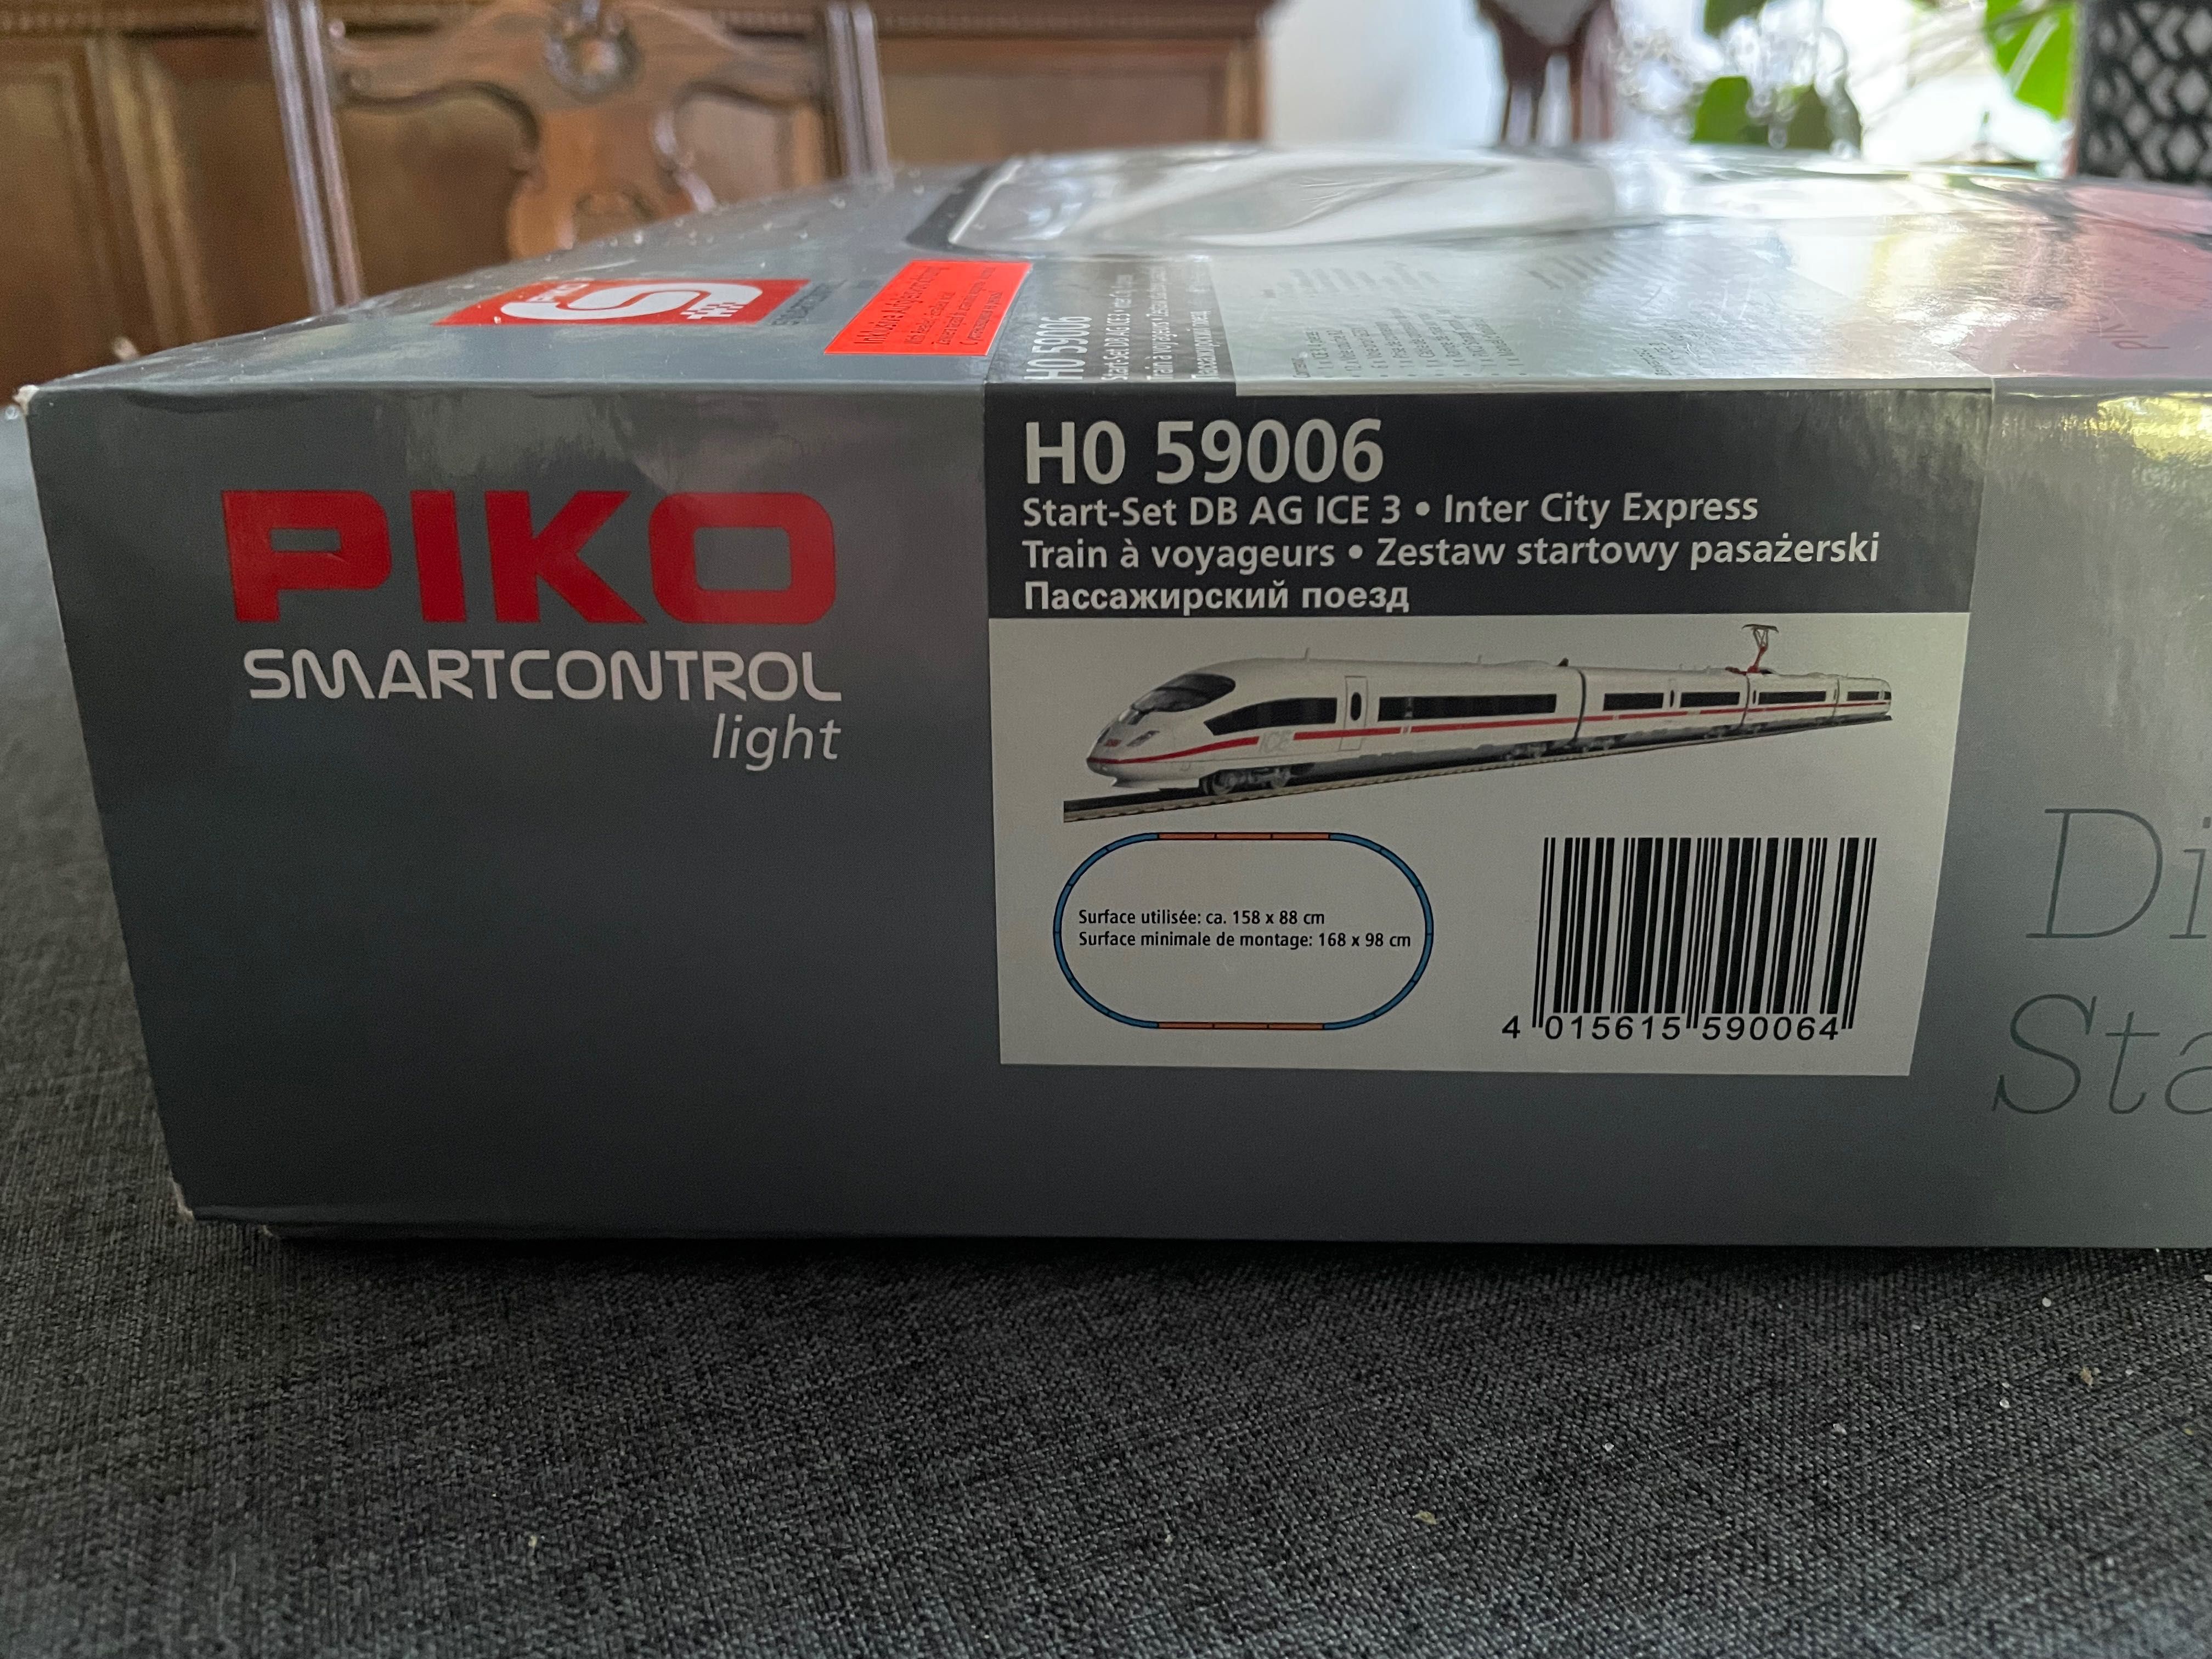 Zestaw startowy ICE 3 smartcontrol light PIKO